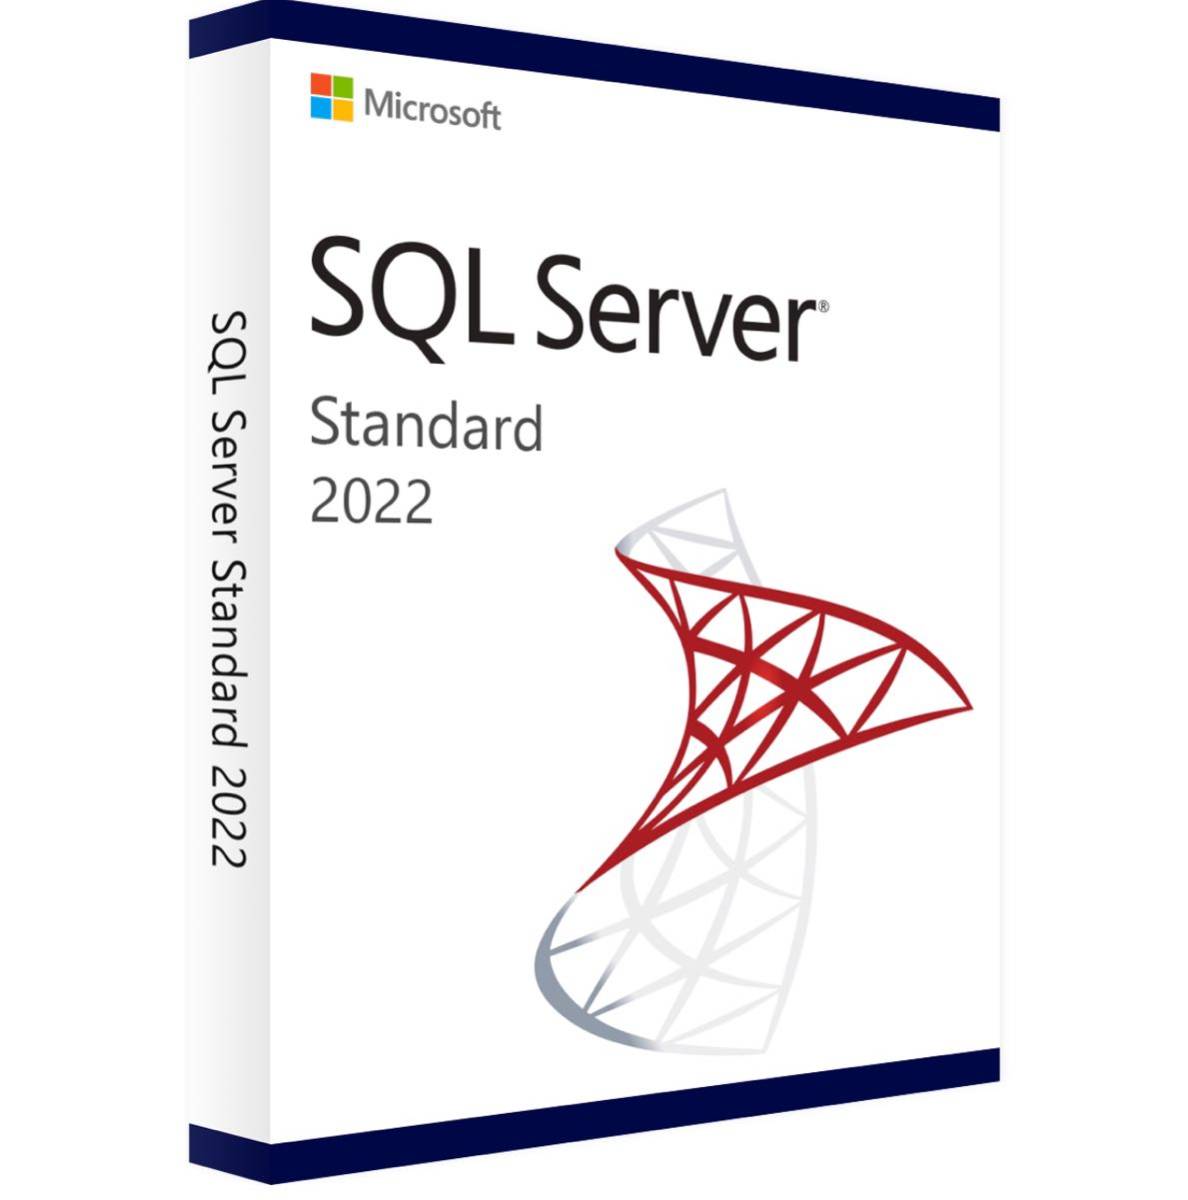 最新版Microsoft SQL Server 2022 Standard Core ライセンス 5CLT 正規オンライン認証プロダクトキー 日本語対応